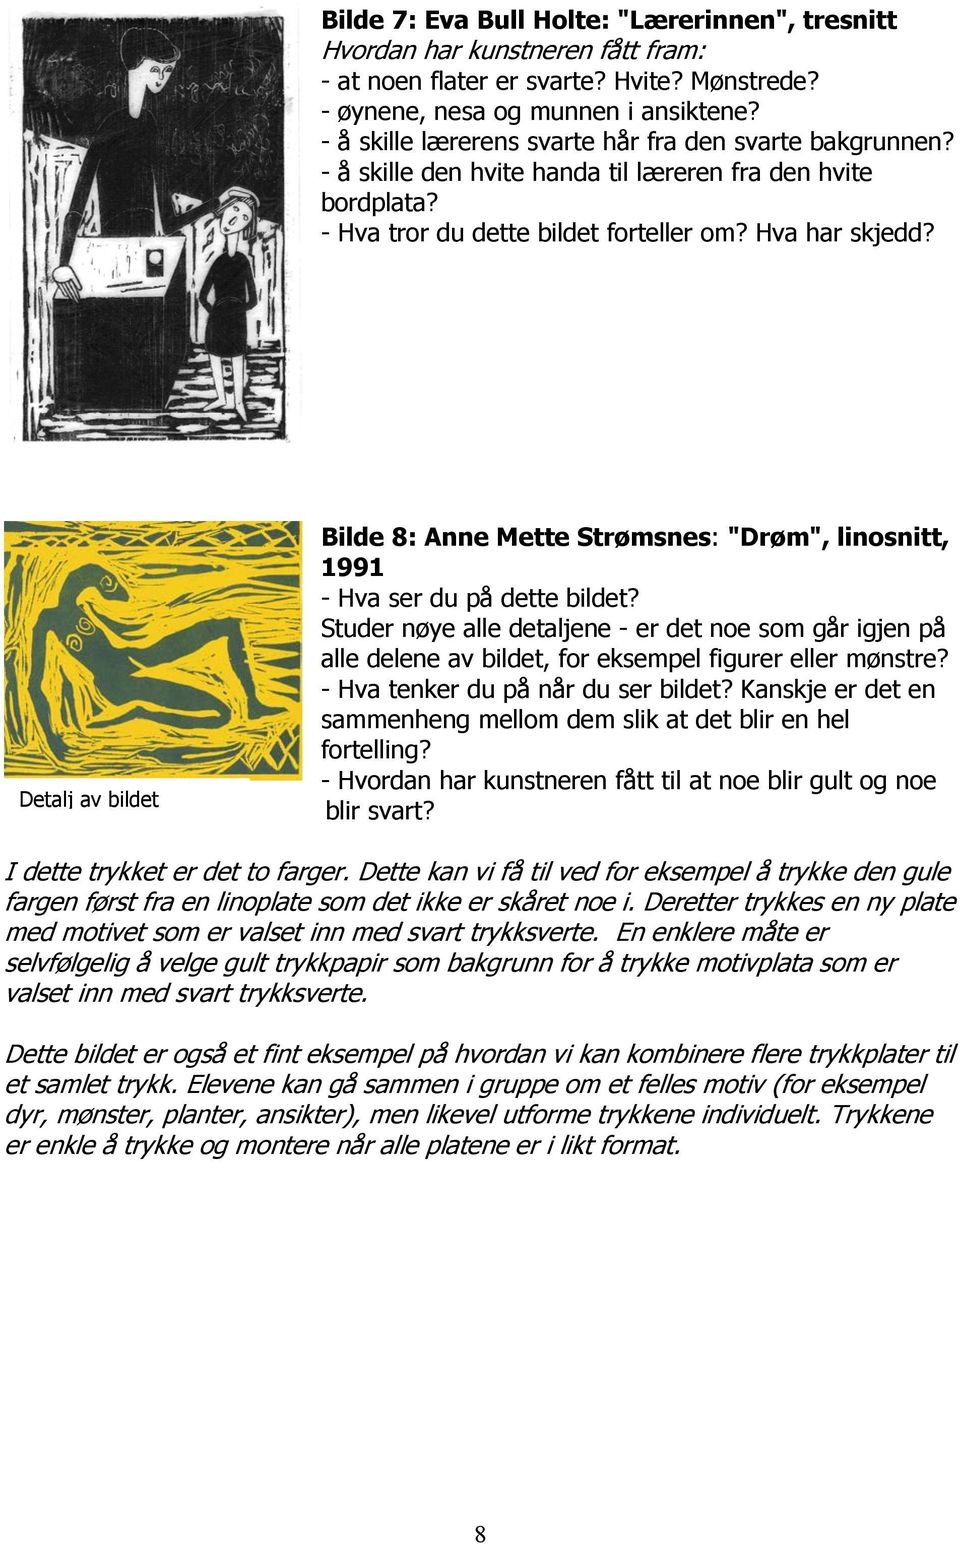 Detalj av bildet Bilde 8: Anne Mette Strømsnes: "Drøm", linosnitt, 1991 - Hva ser du på dette bildet?